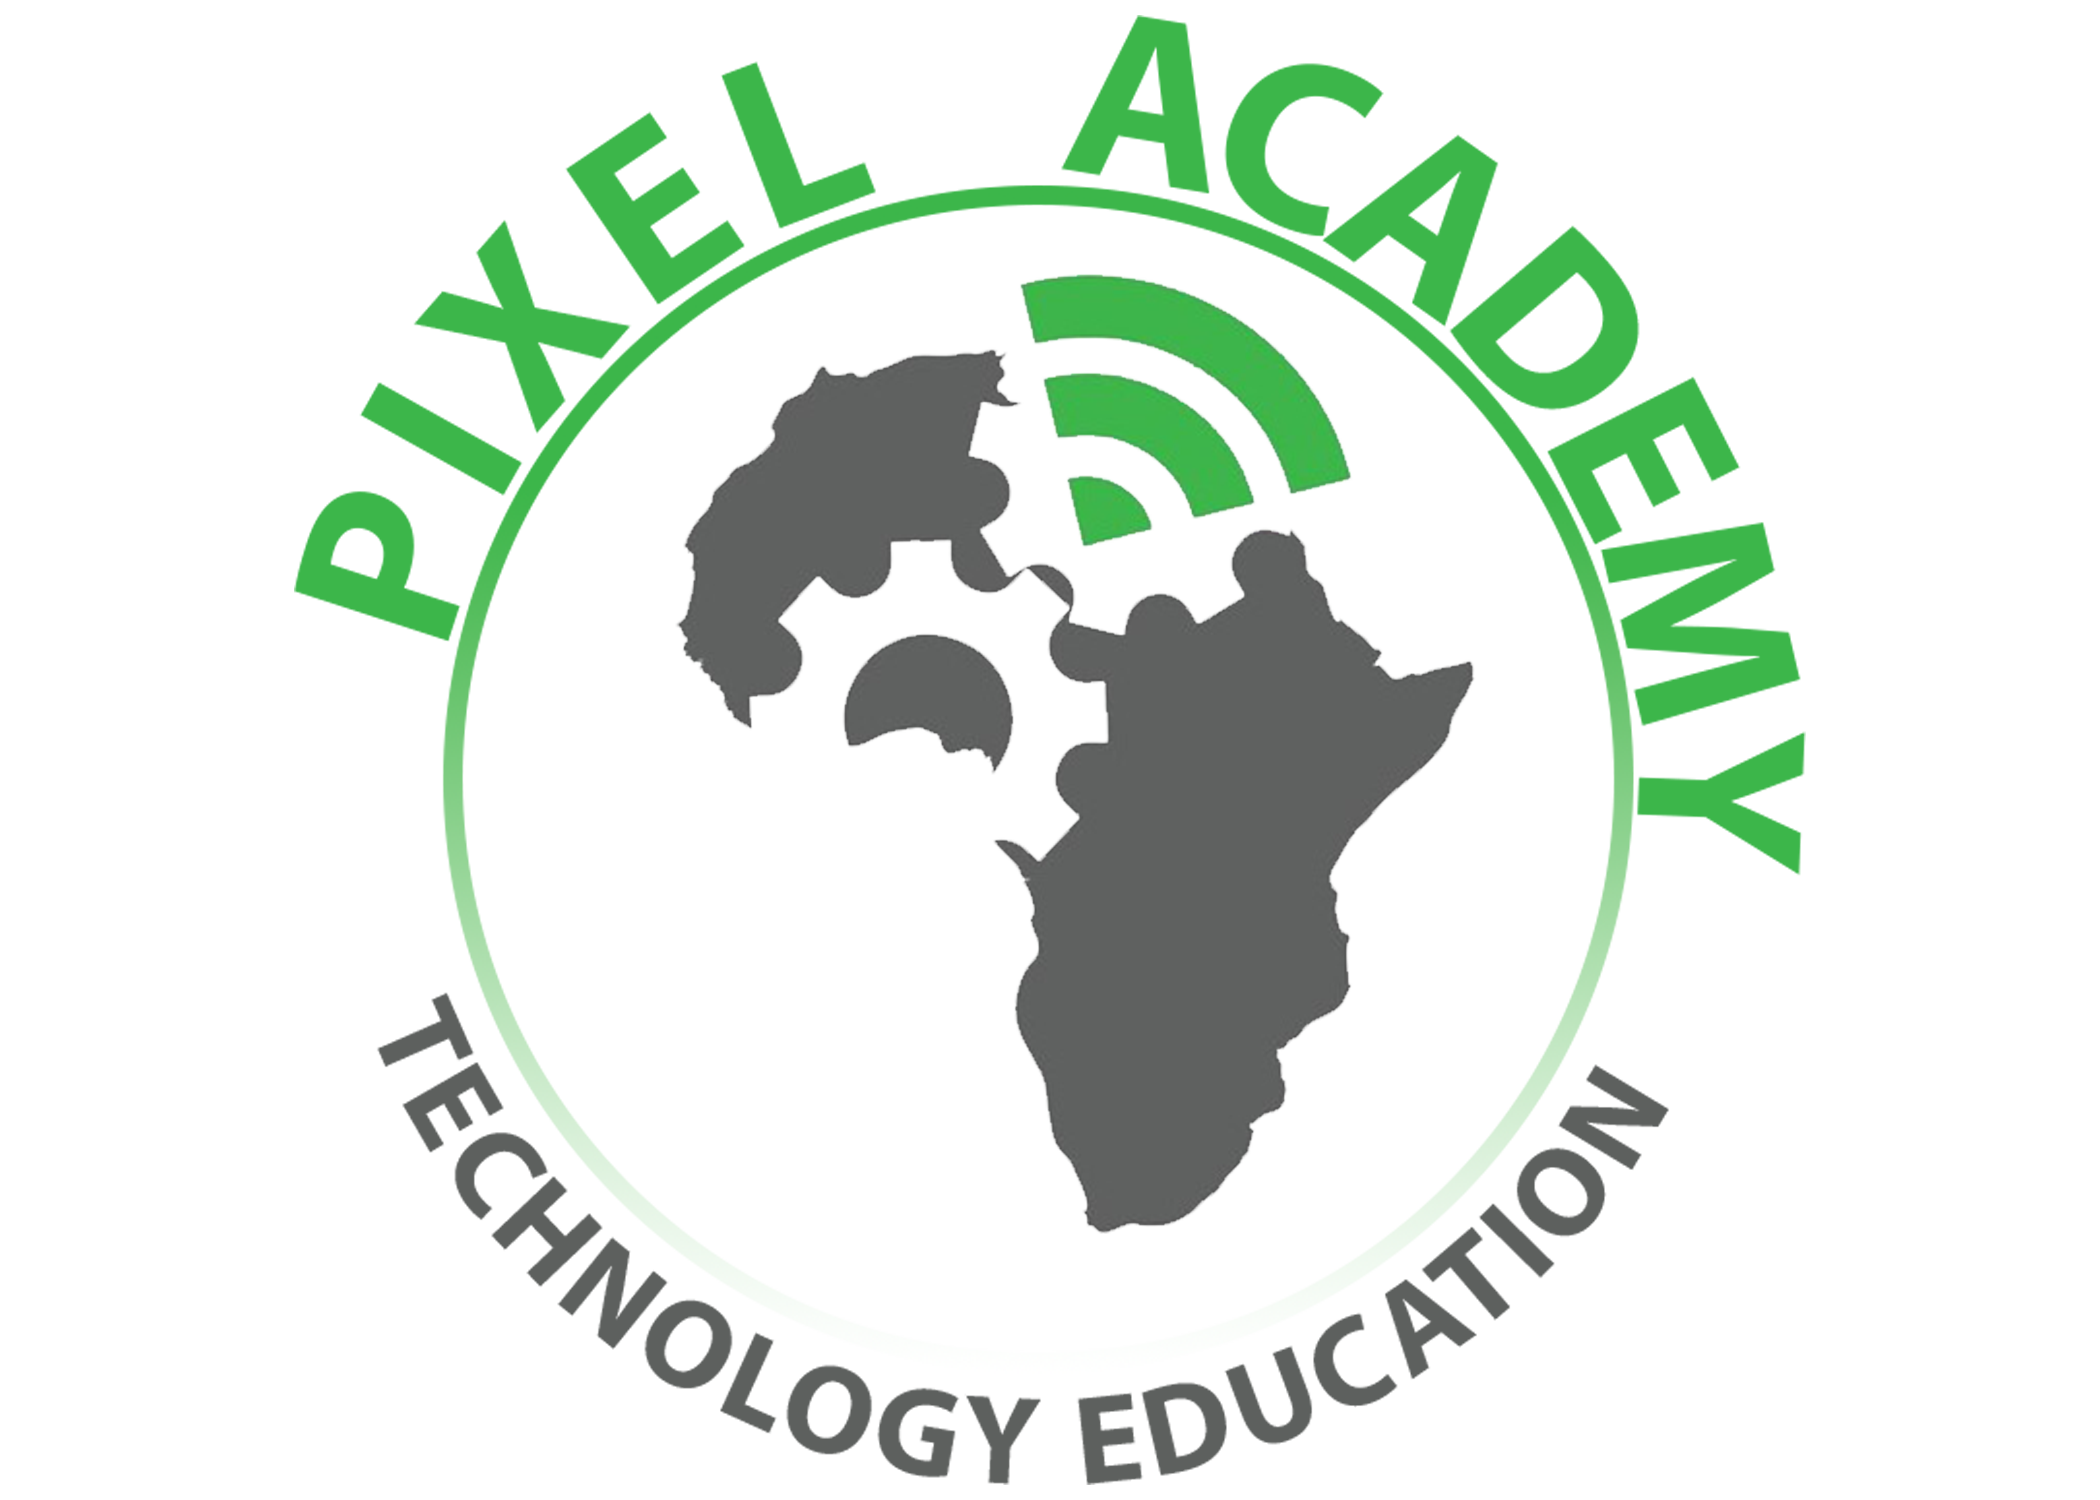 PixelAcademyAfrica